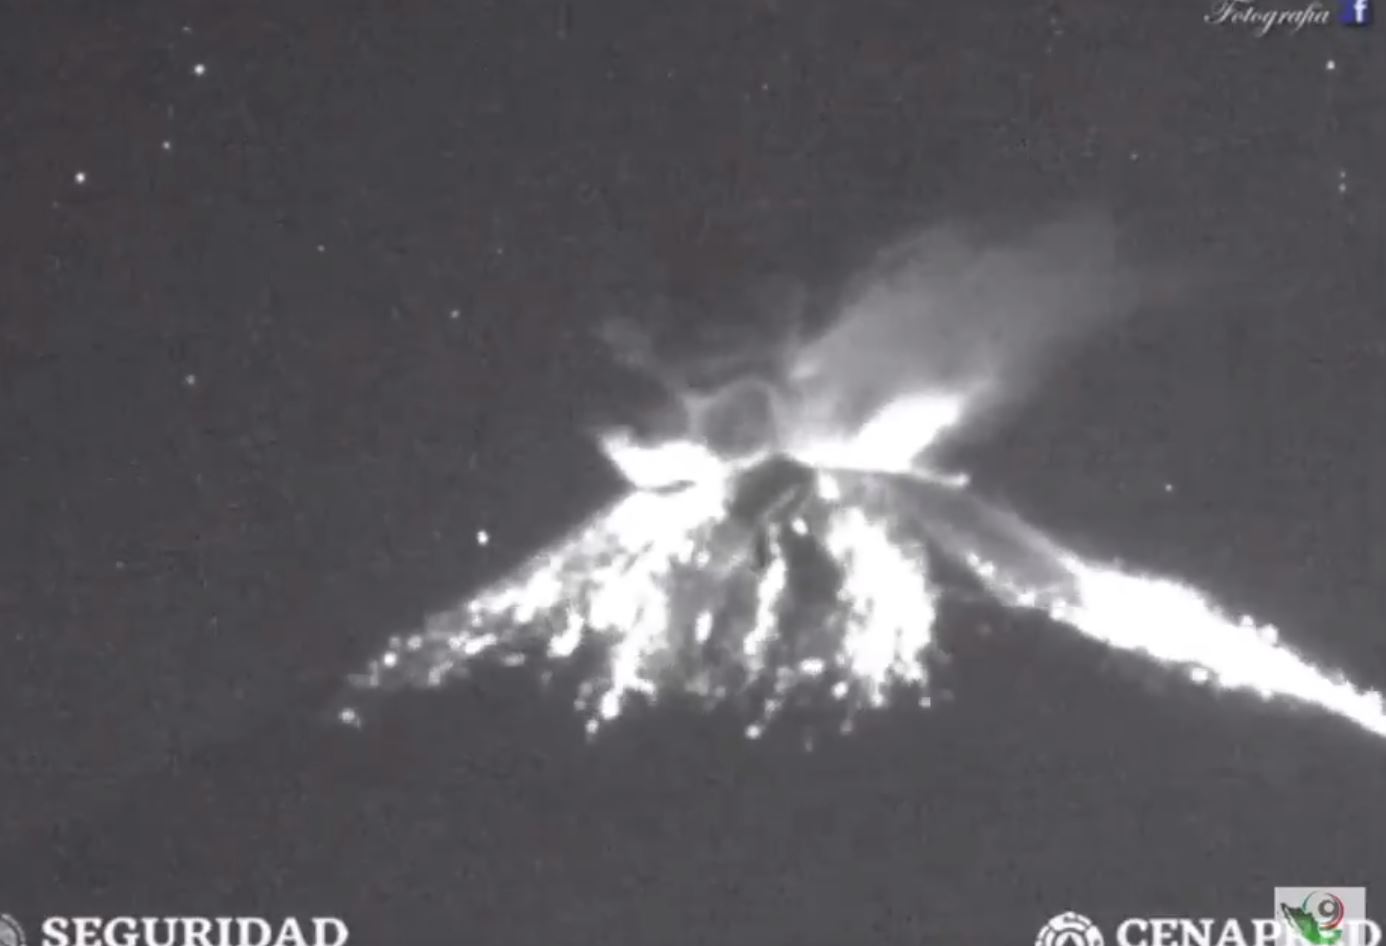 Volcán Popocatépetl registra explosión con material incandescente